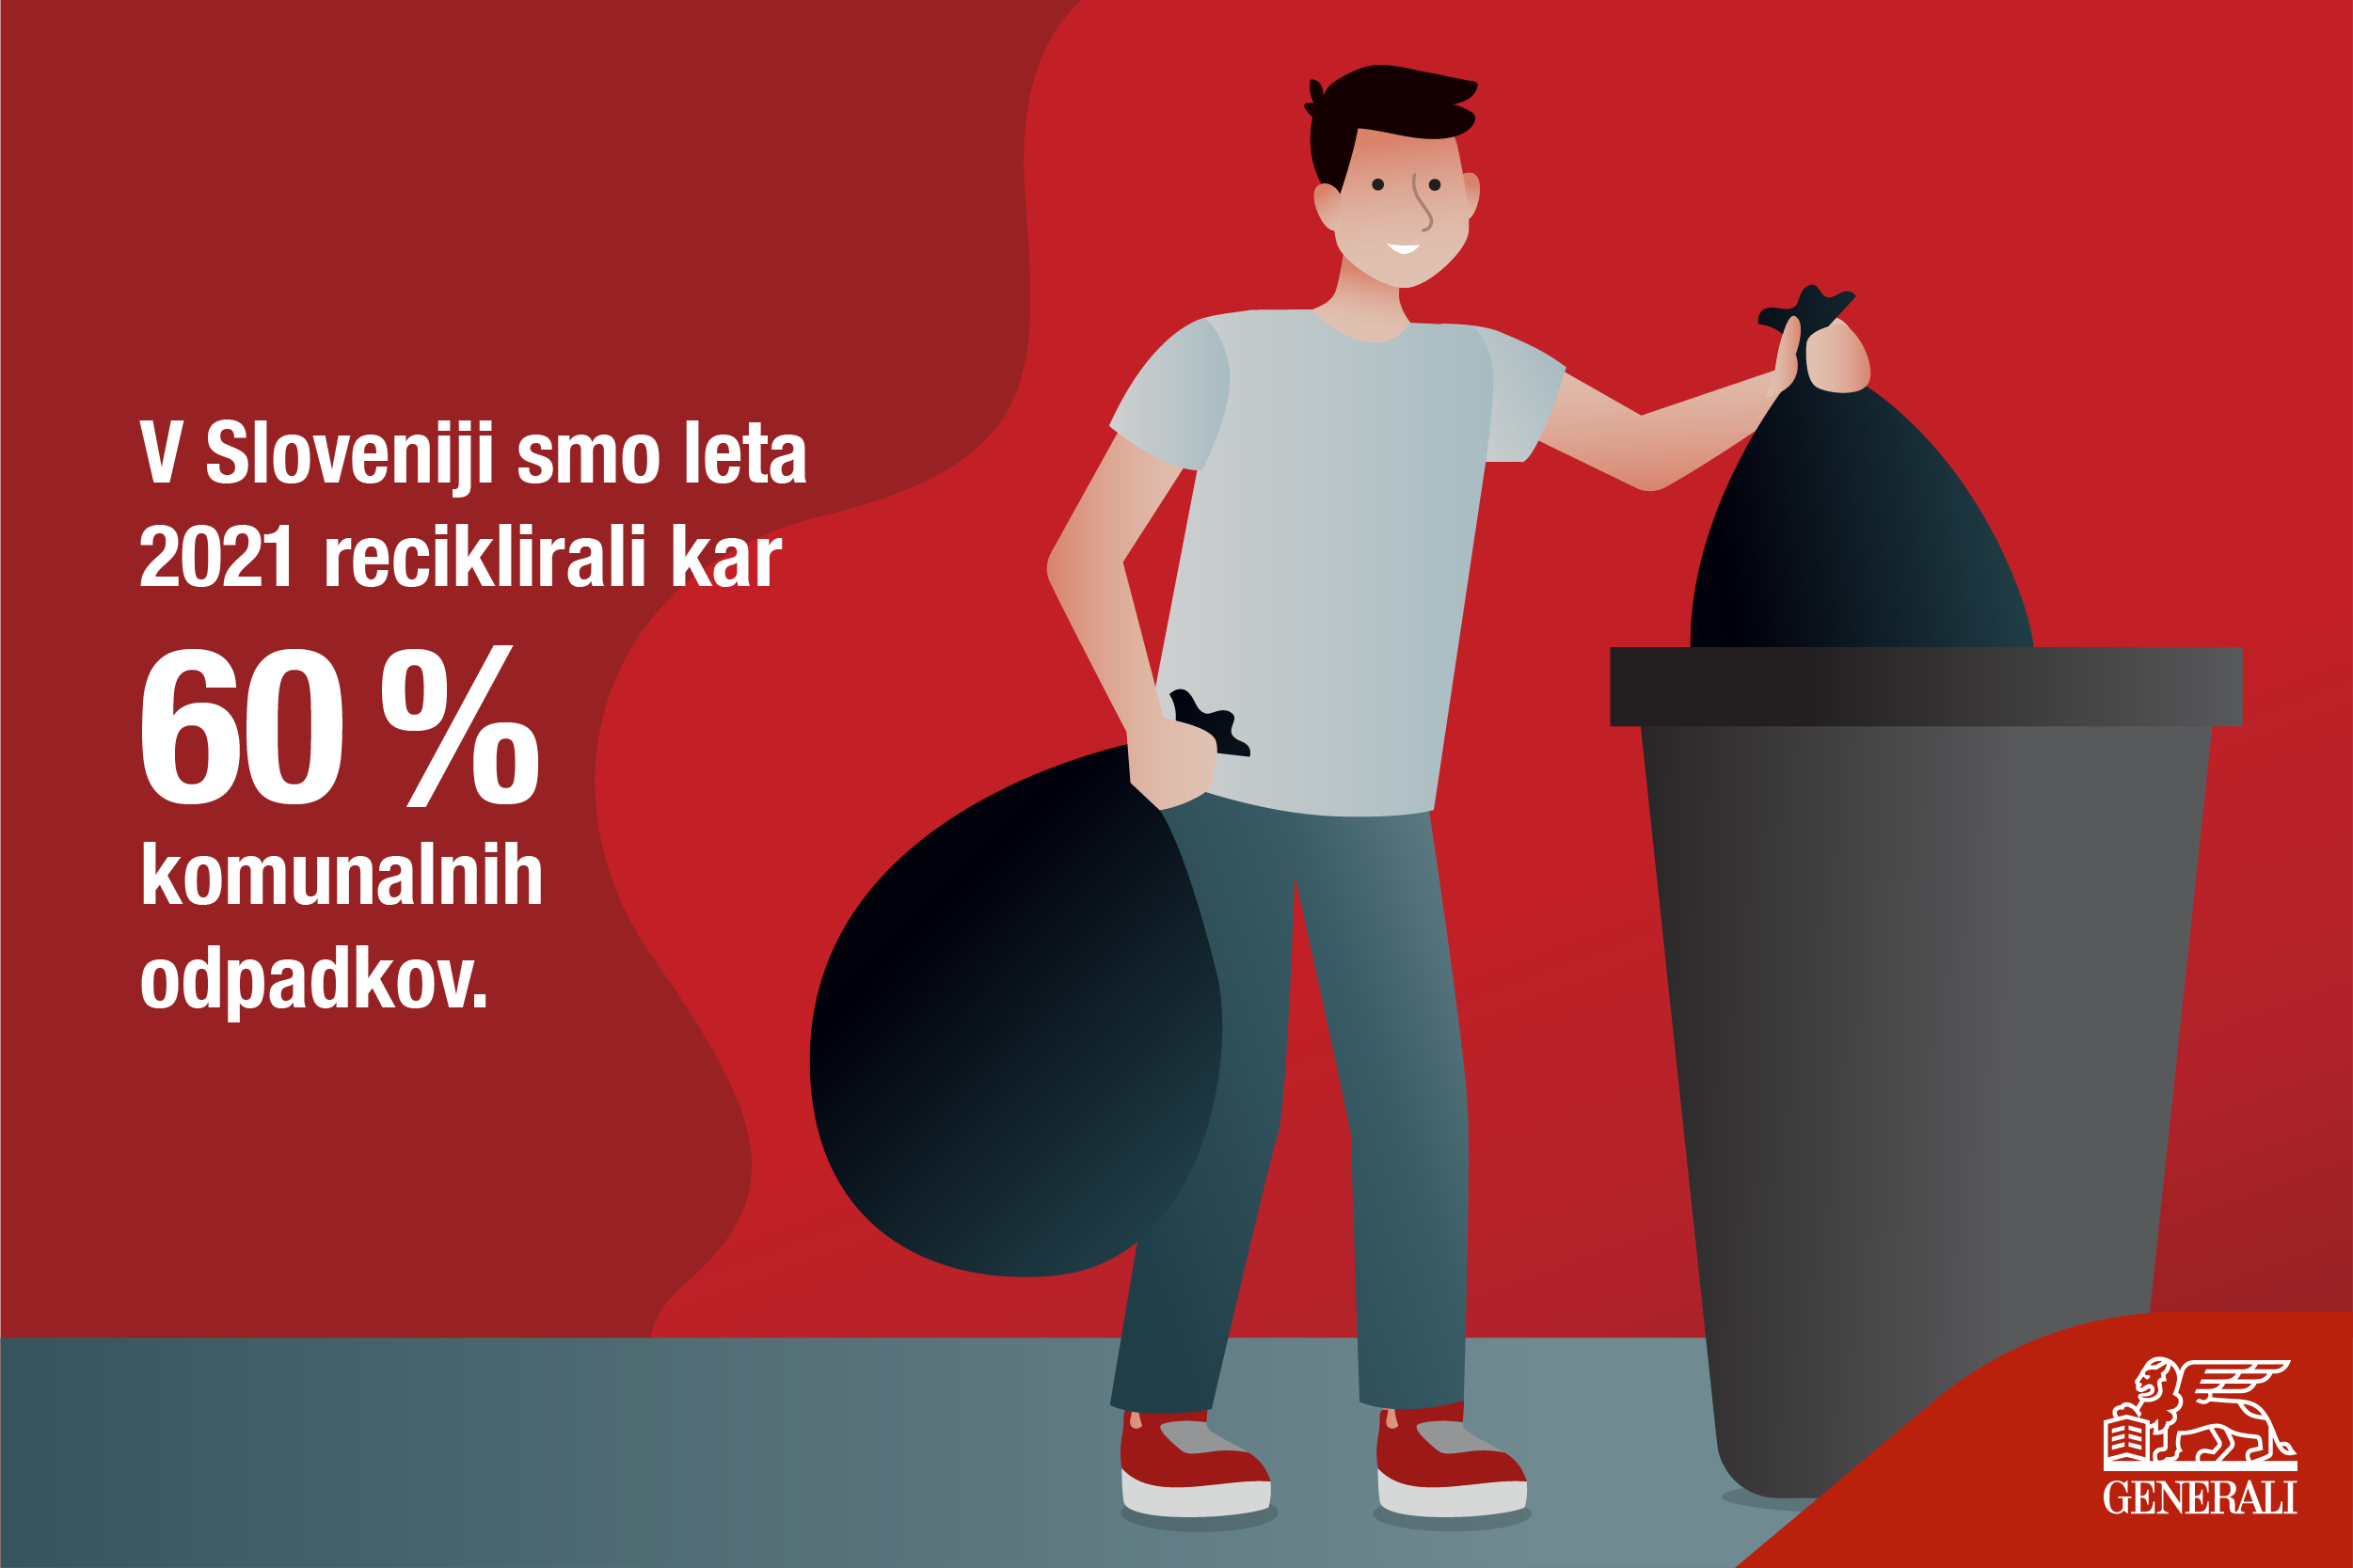 V Sloveniji smo leta 2021 reciklirali kar 60 % komunalnih odpadkov.